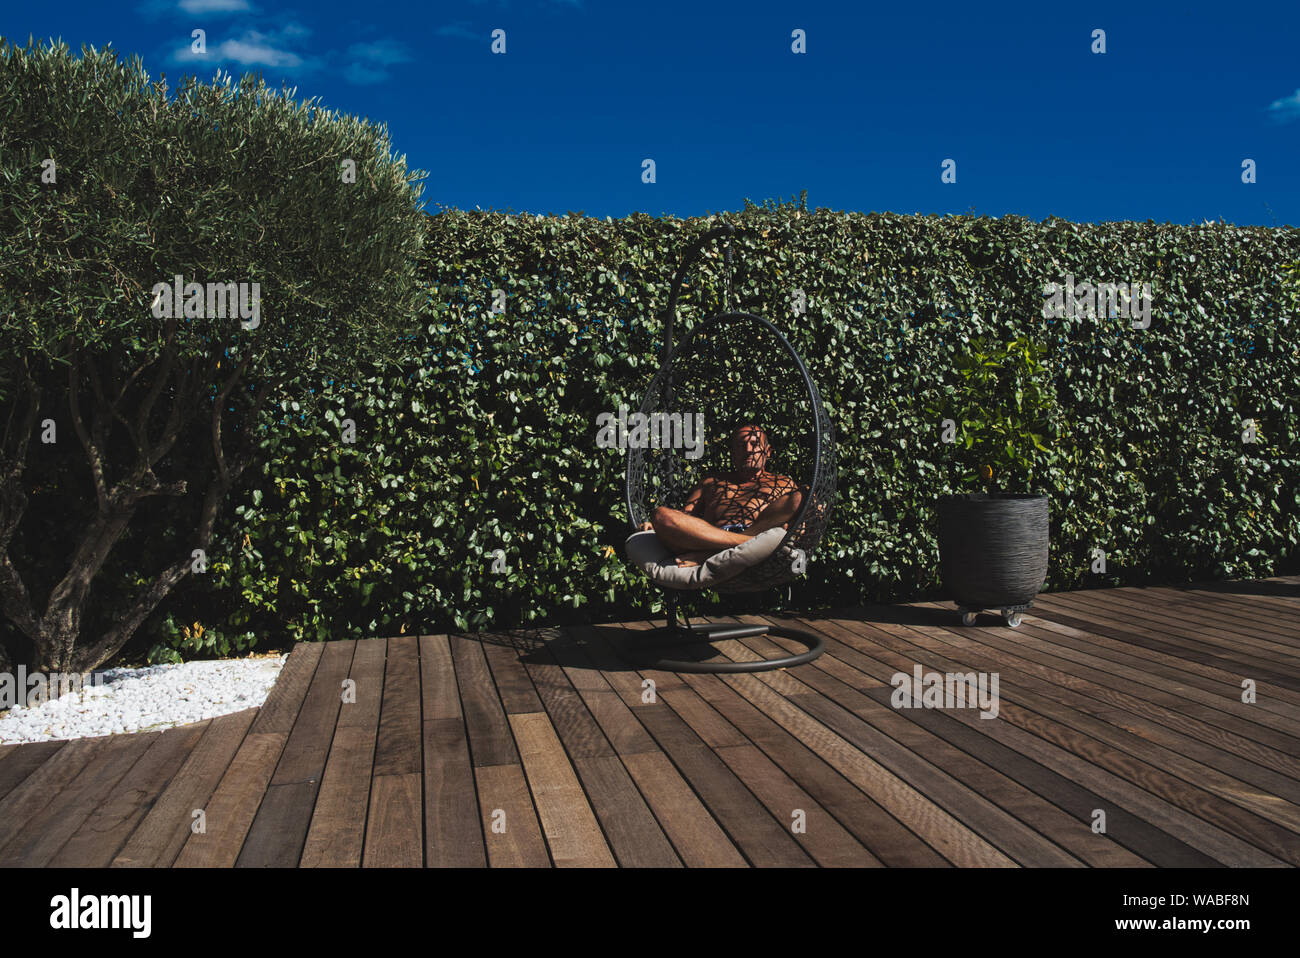 Un modèle masculin s'asseoir dans un siège suspendu sur un sol en bois dans un jardin avec un olivier Banque D'Images